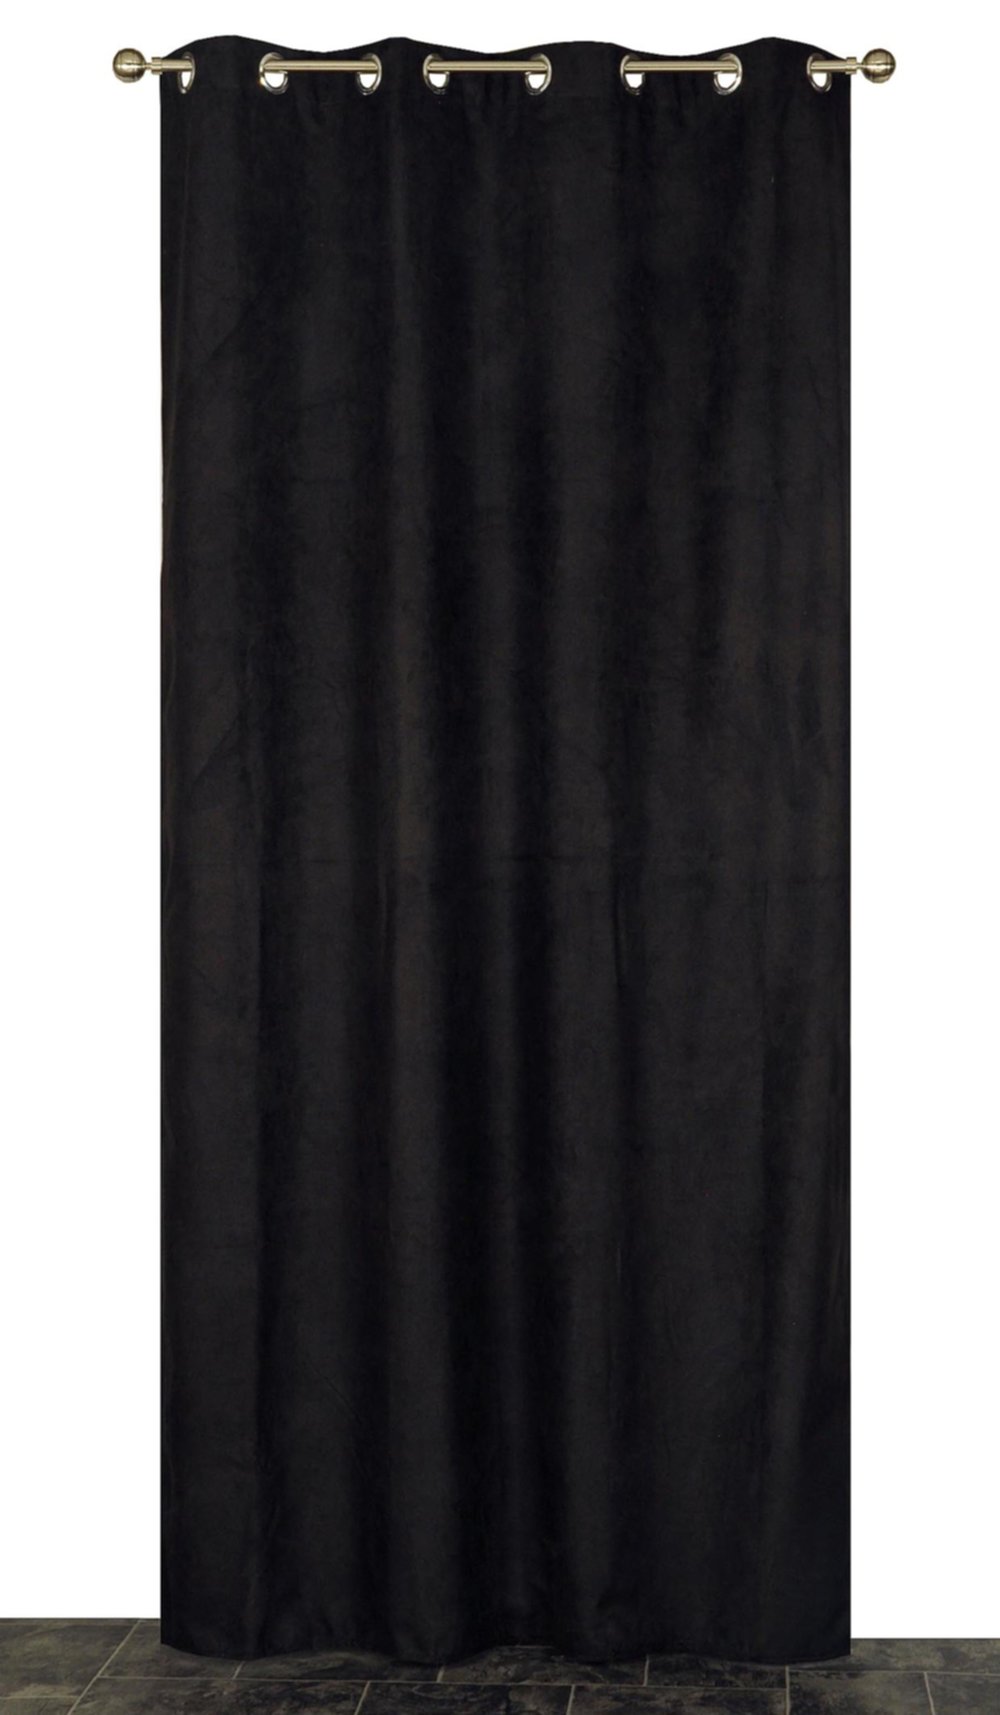 Rideau thermique noir 140x240cm - DYLREV